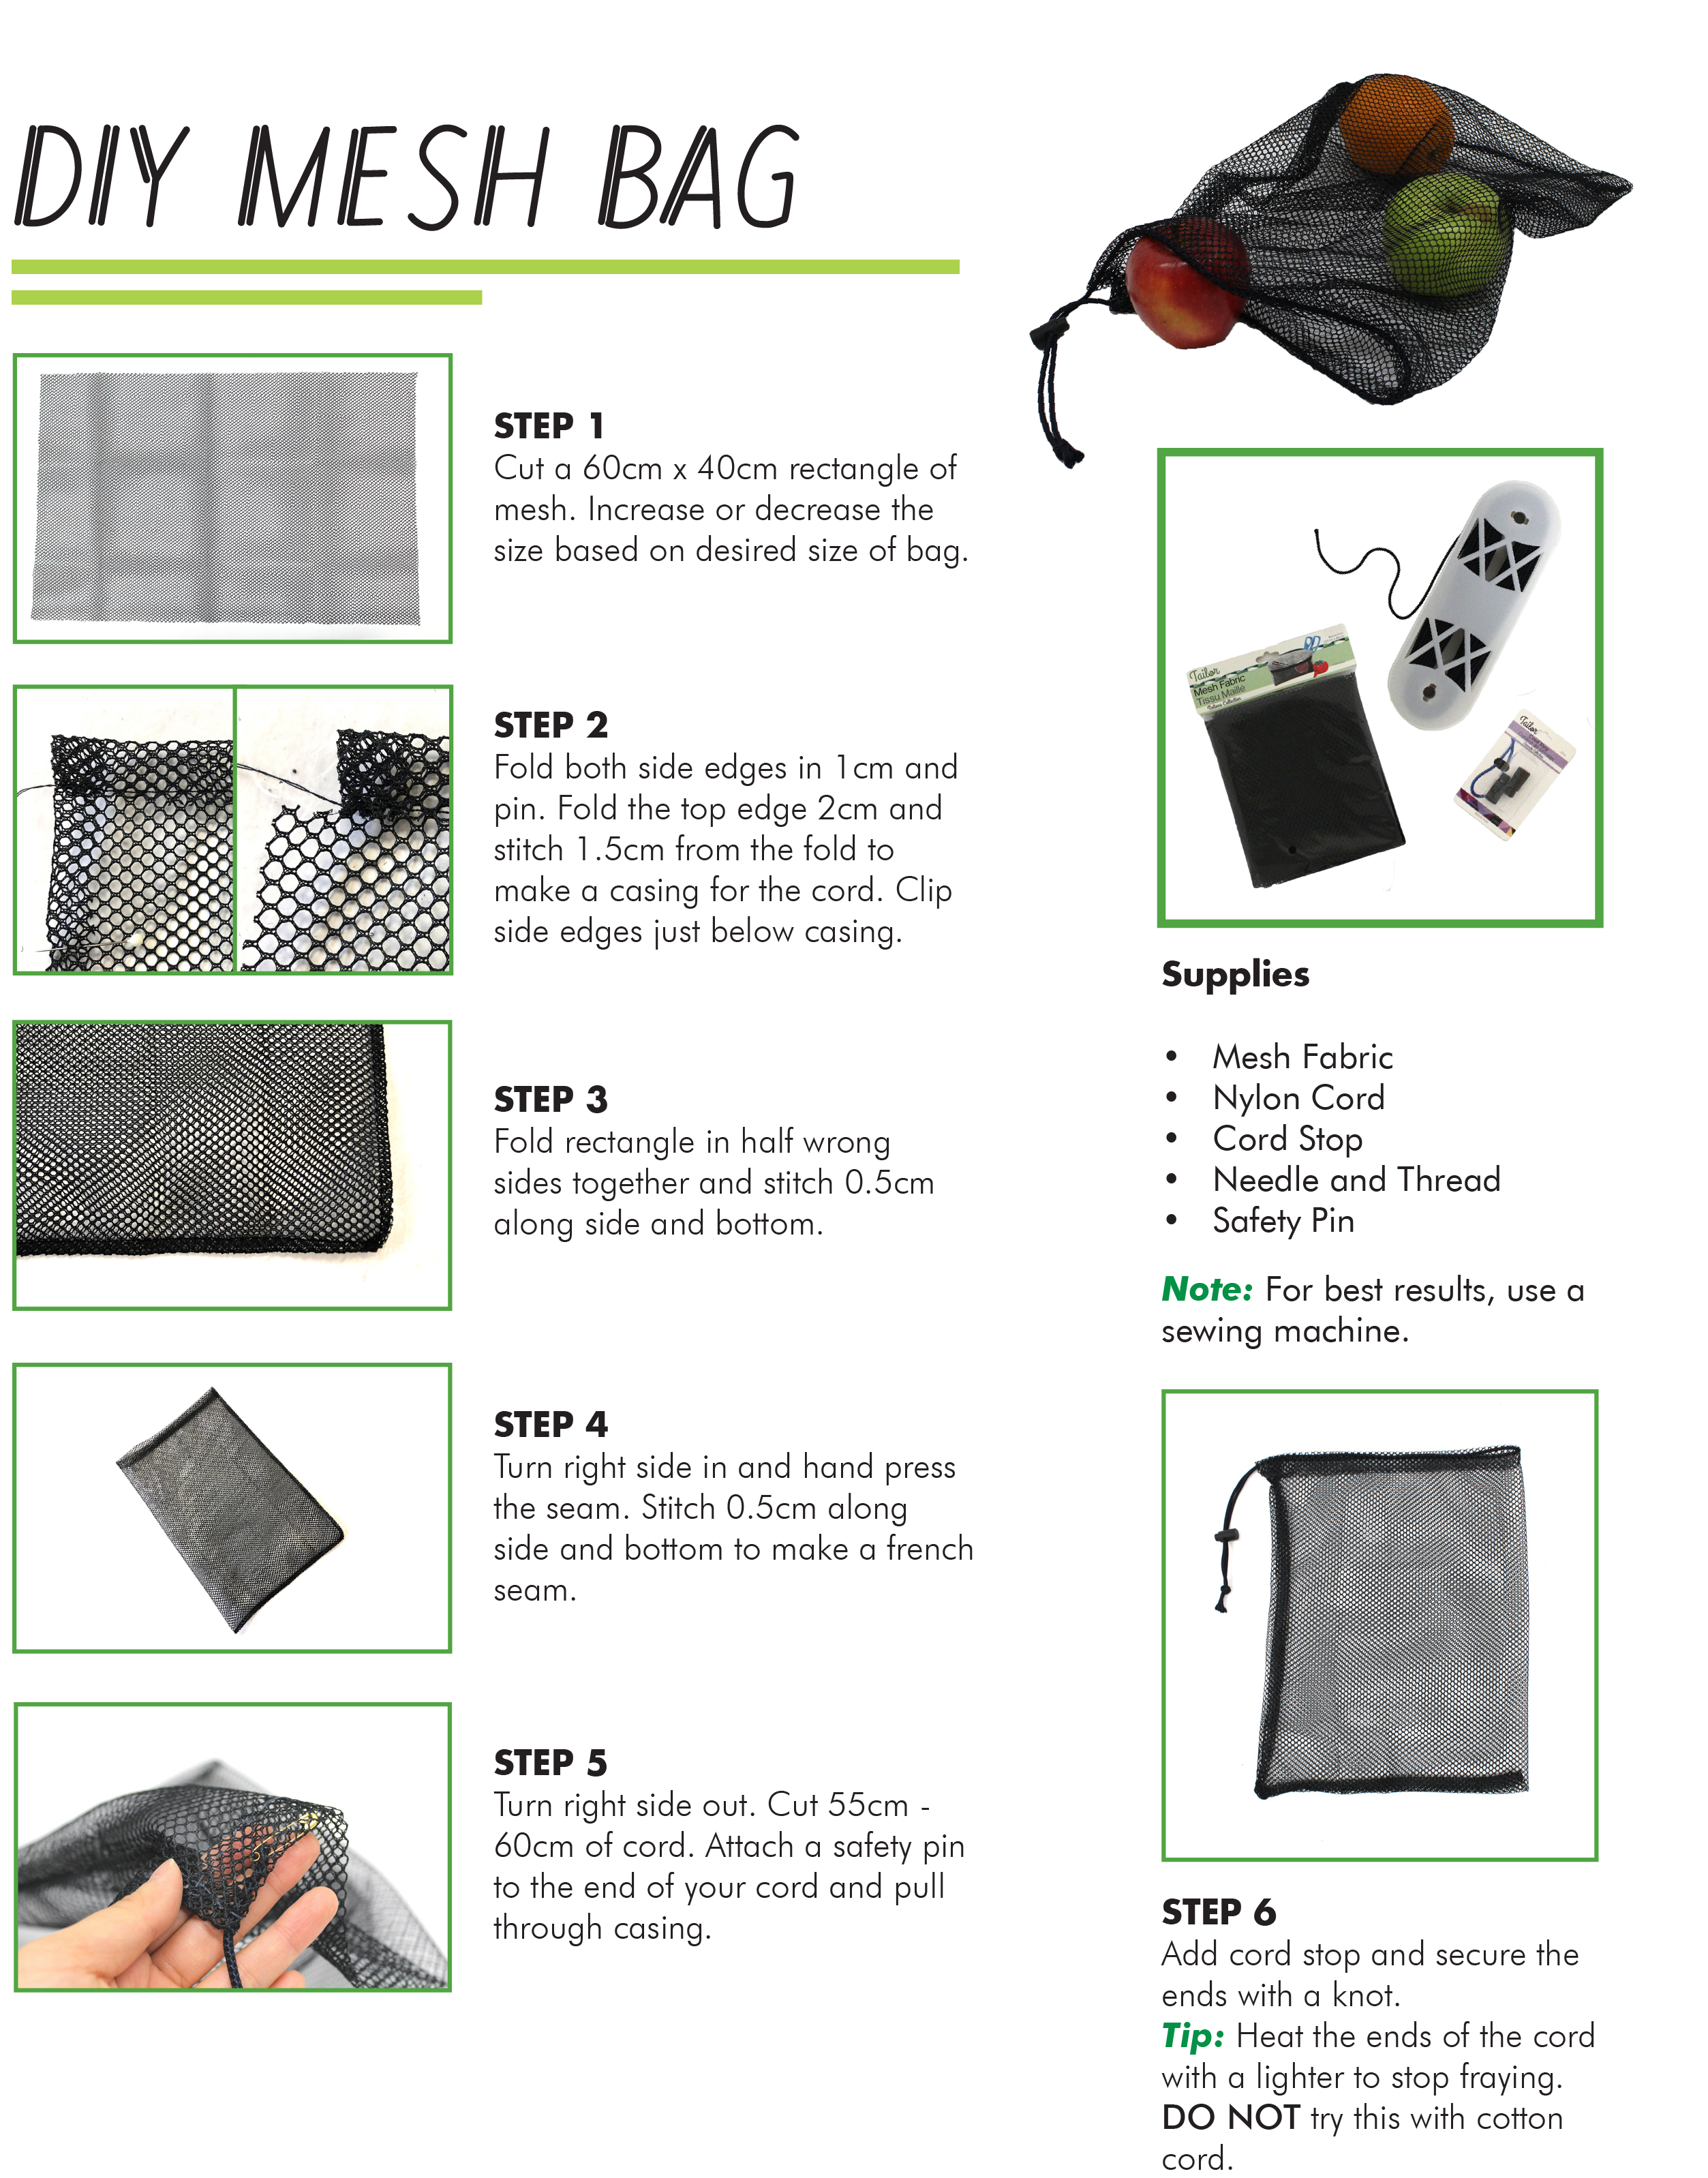 Steps on how to make a reusable mesh bag